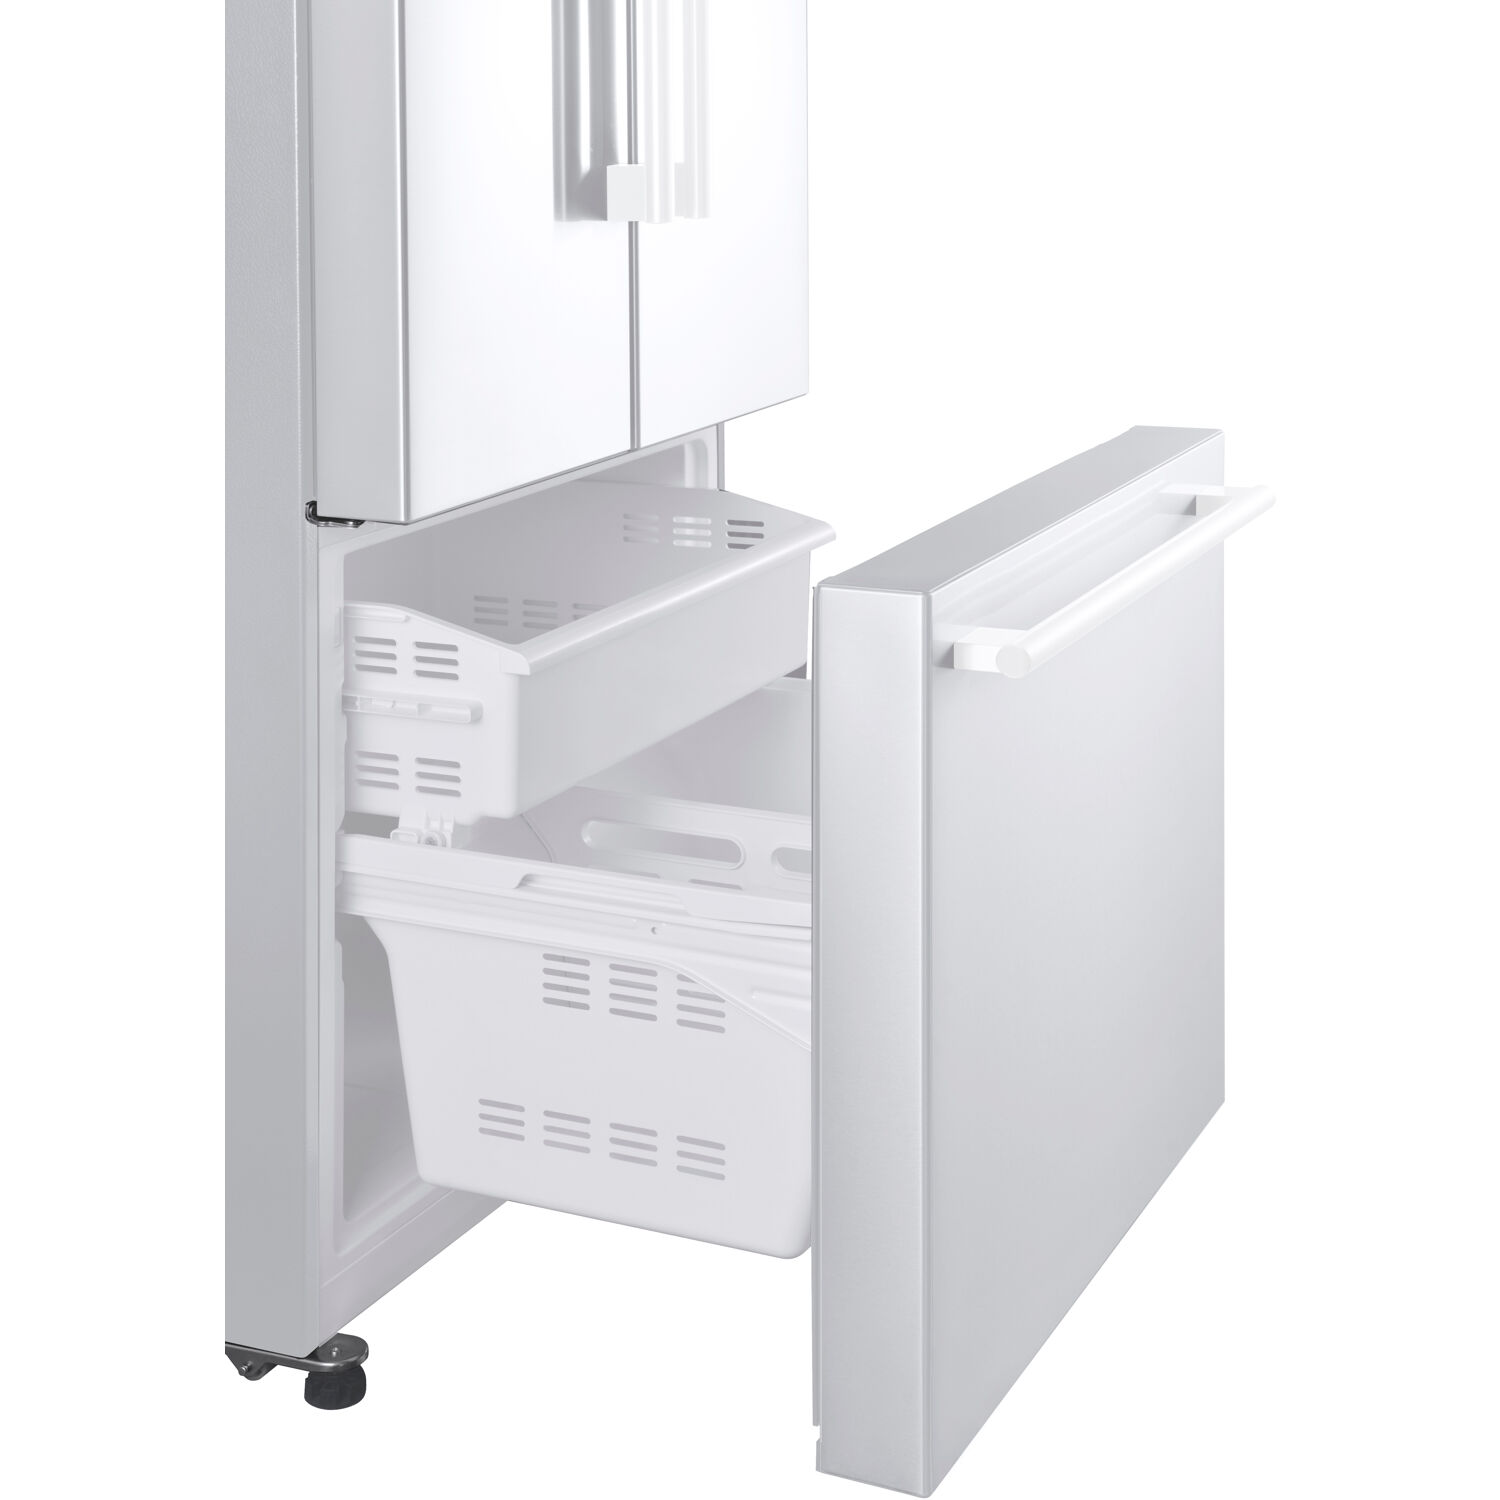 Galanz 16 cu. ft. 3-Door French Door Refrigerator, White, 28.35" Wide - image 4 of 6